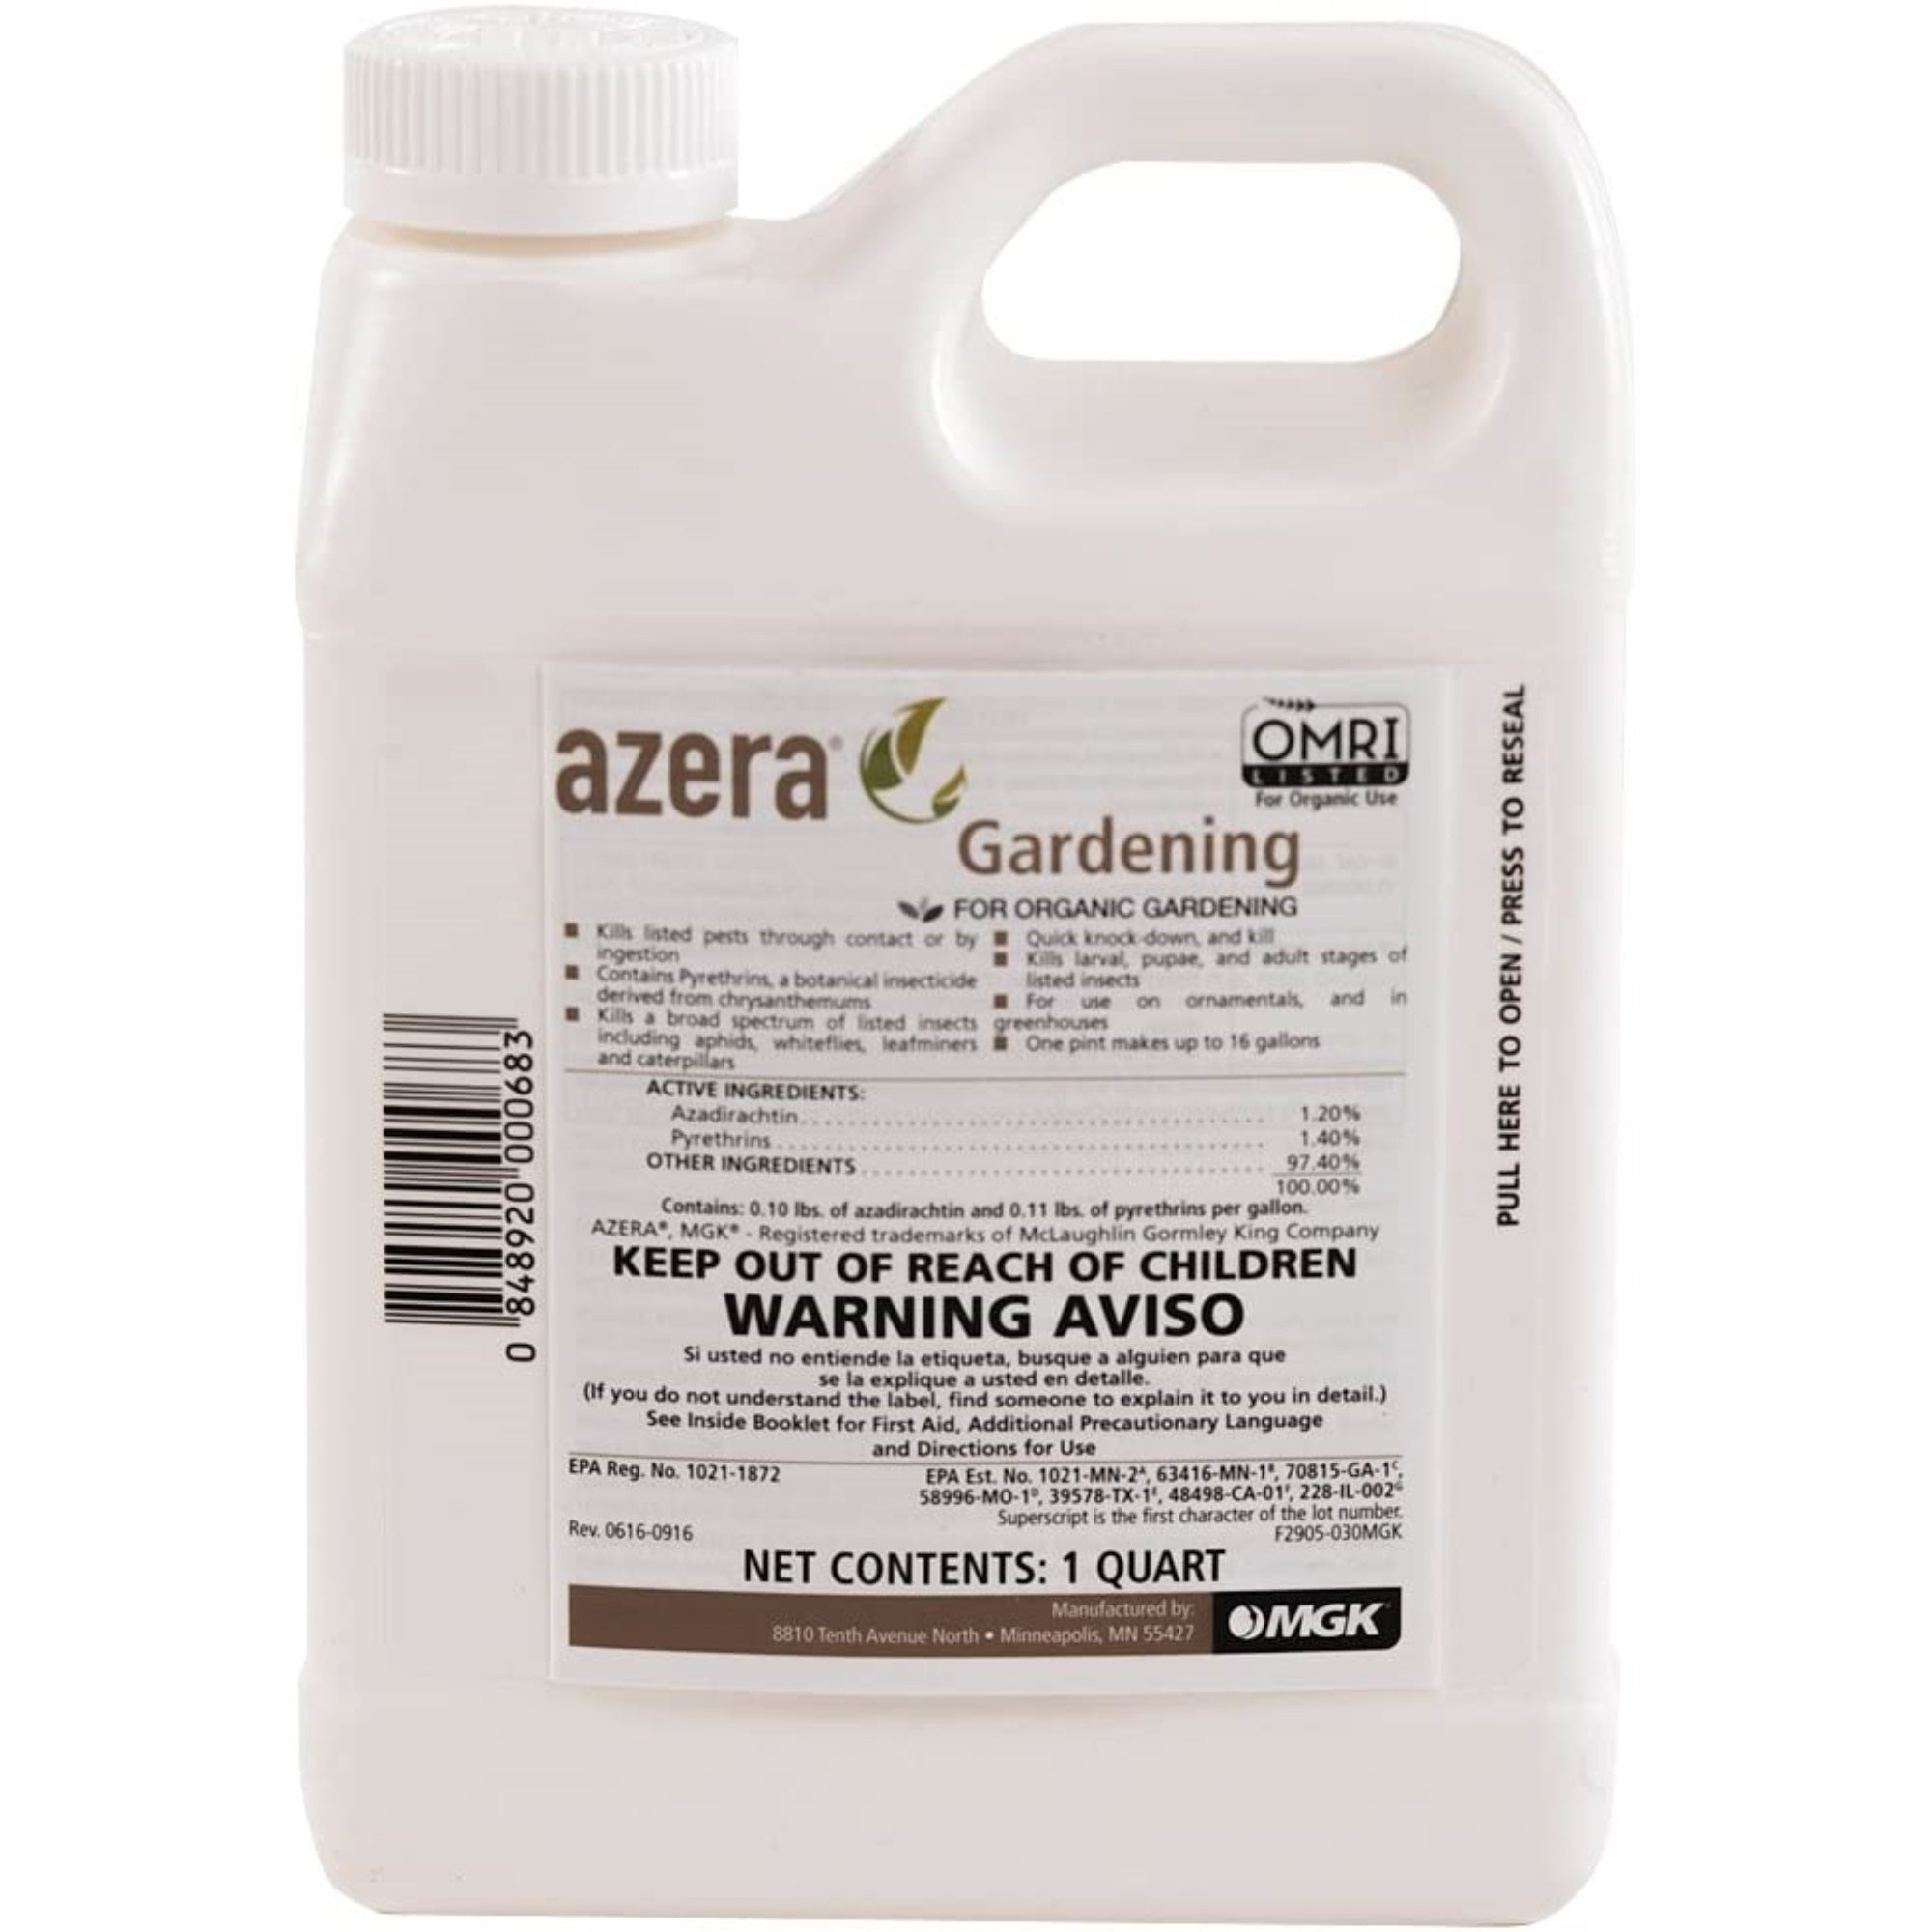 Azera Gardening Organic Dual Action Azadirachtin/Pyrethrin Insecticidal Concentrate, 32 Ounces